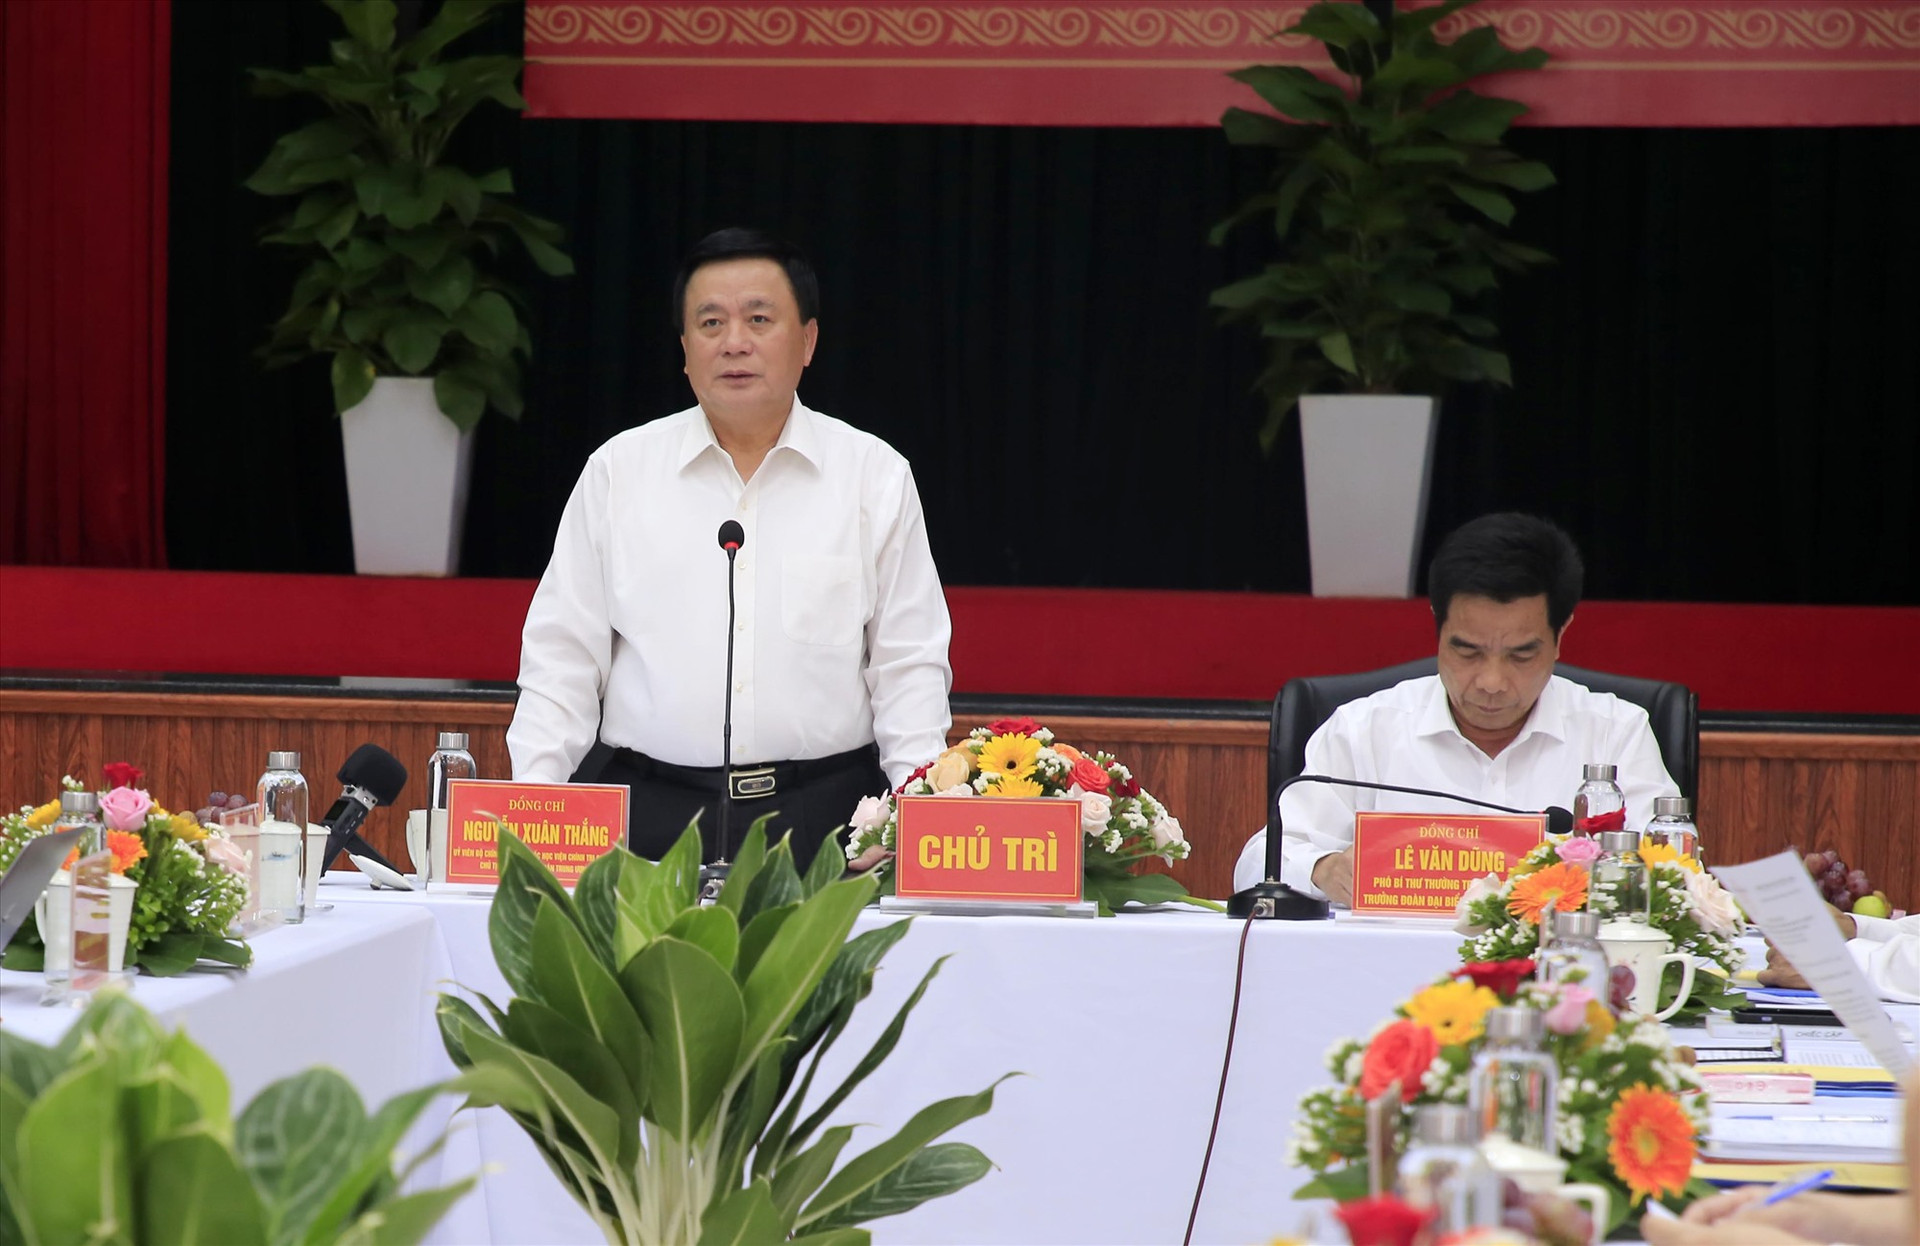 Đồng chí Nguyễn Xuân Thắng - Giám đốc Học viện Chính trị Quốc gia kết luận tại buổi làm việc. Ảnh: T.C